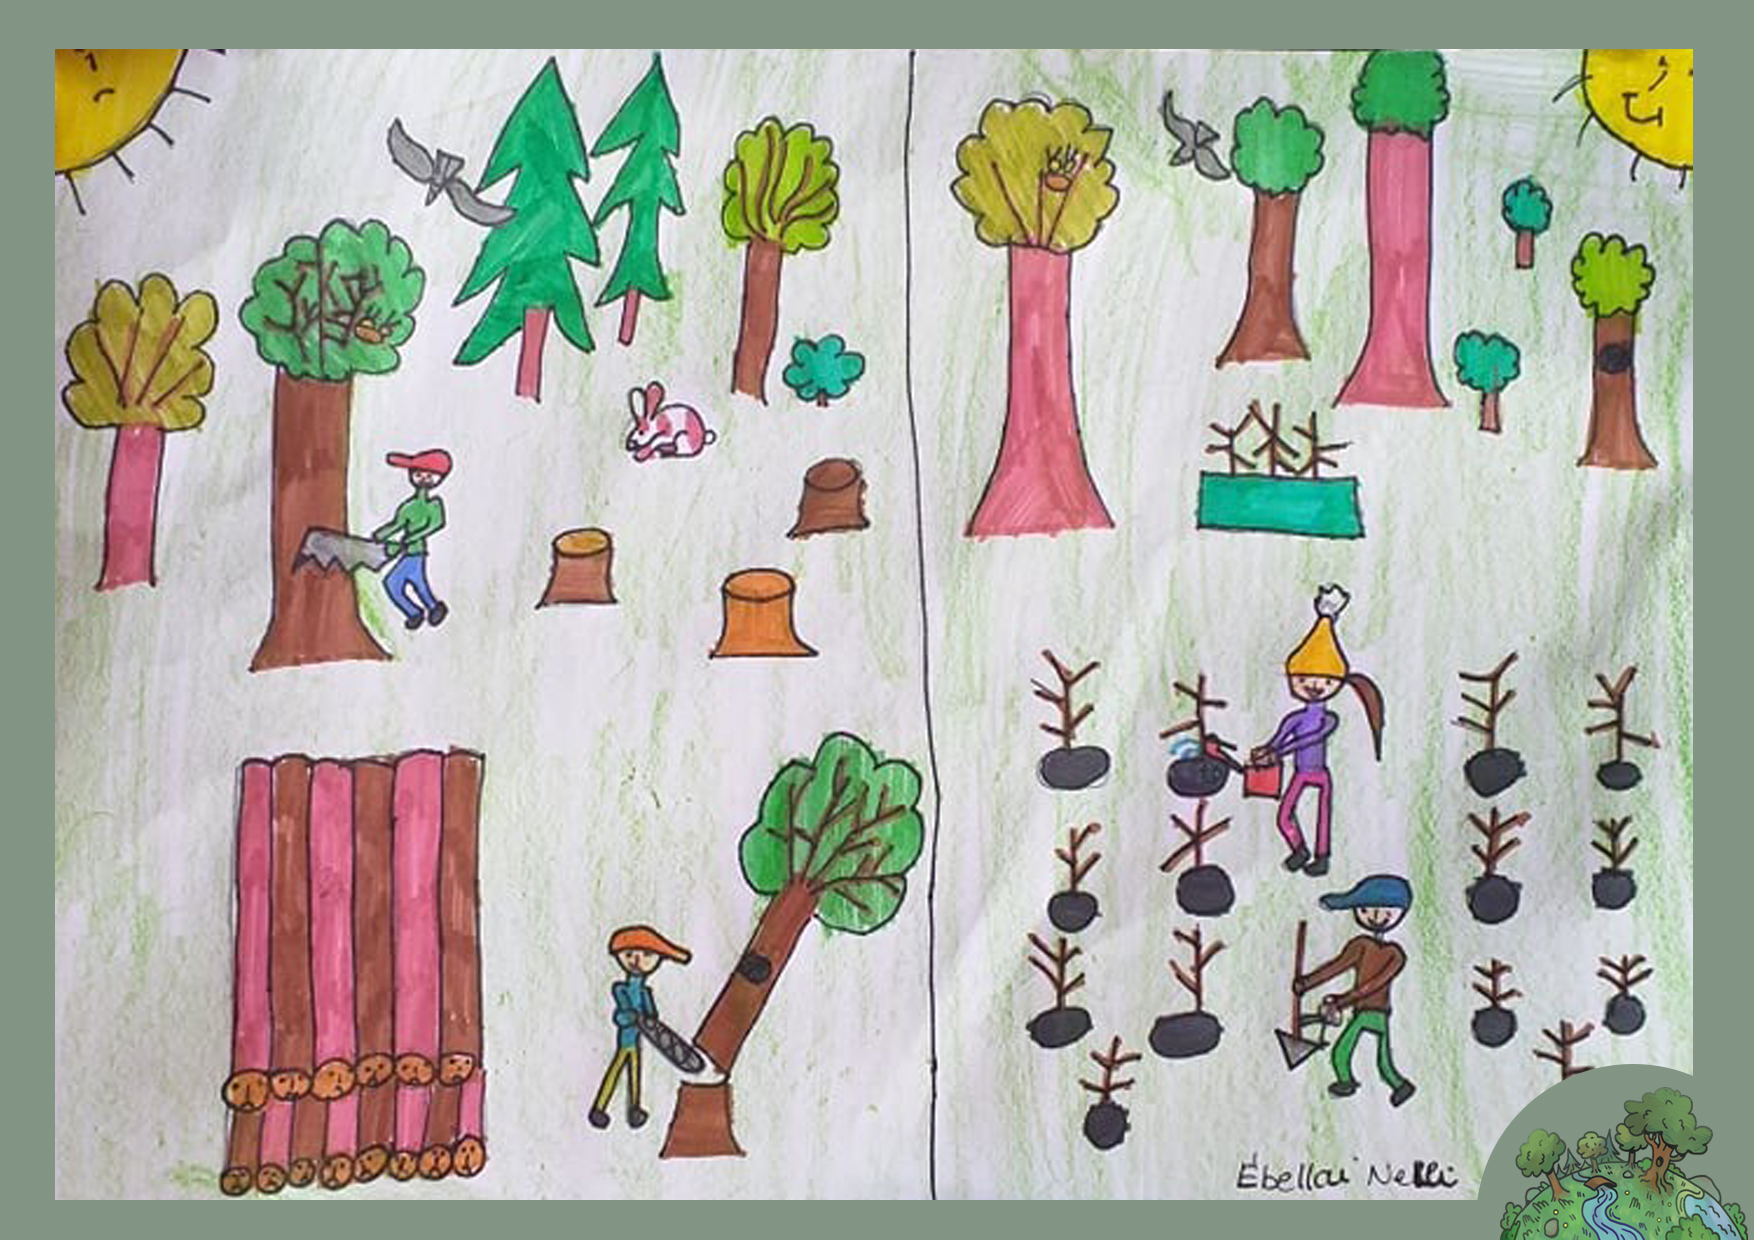 Ébellai Nelli, 7 éves<br />A kép címe: Ne vágd ki az életet adó fát! Ültess inkább még.